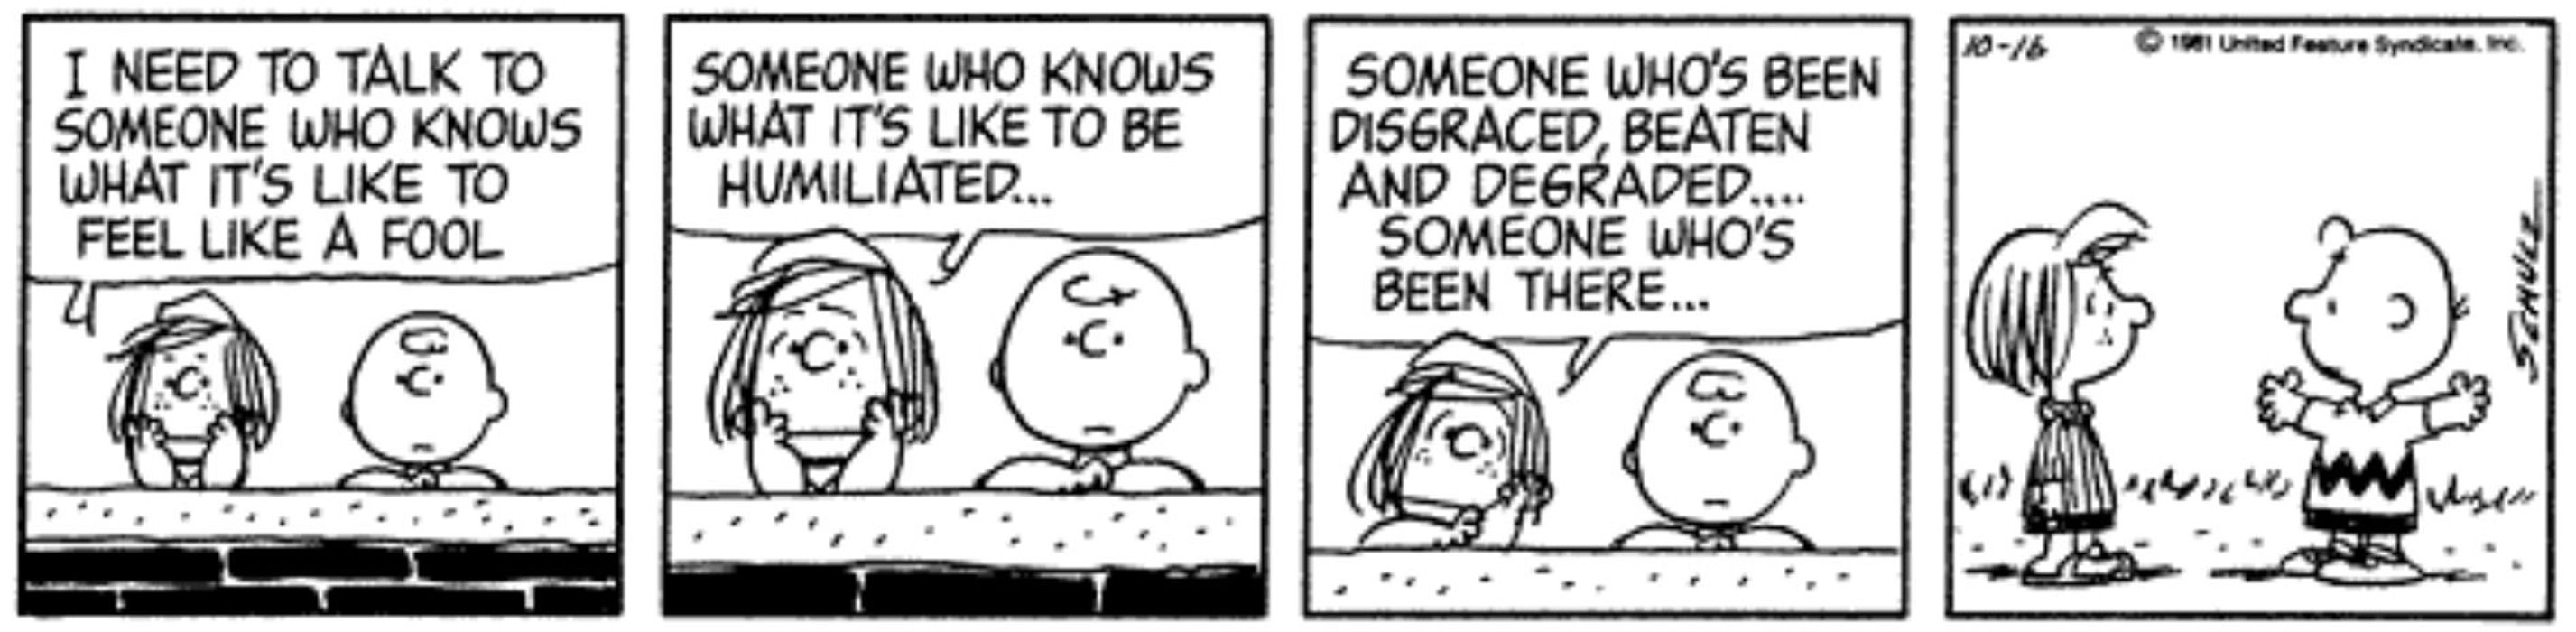 Humiliated Charlie Brown Peanuts